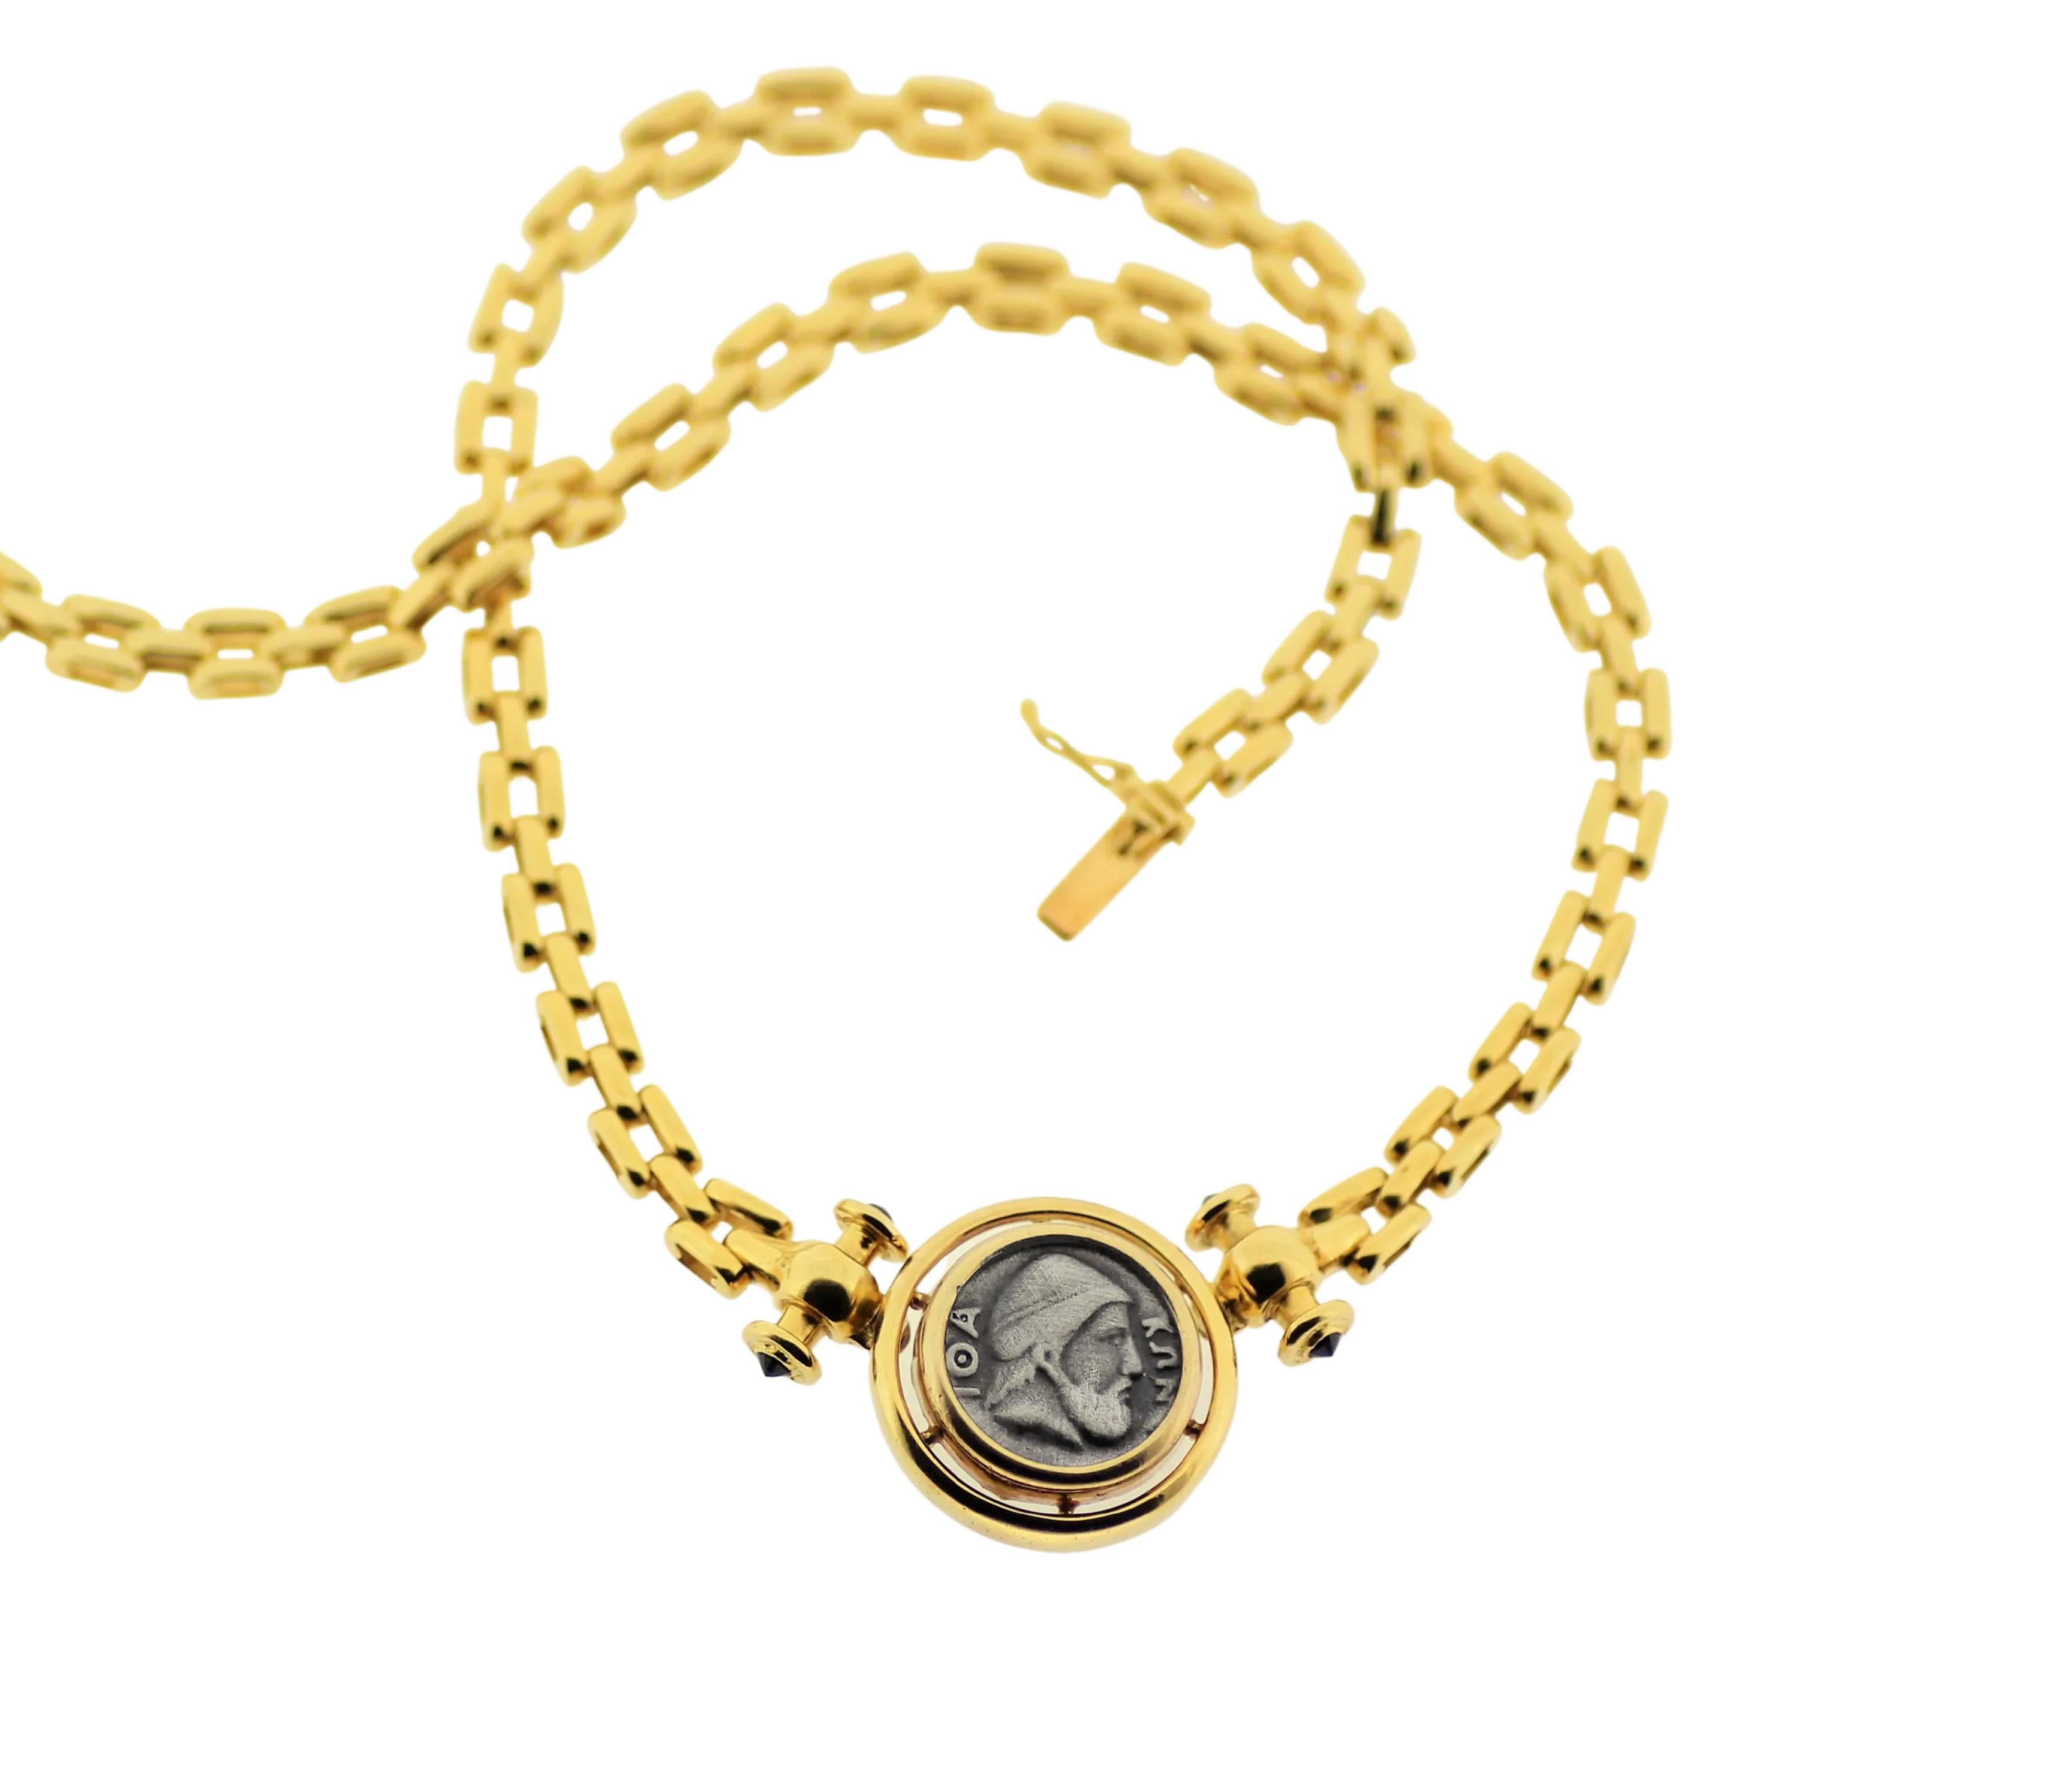 Odysseus Münze griechischen Stil Kette Halskette in 18Kt Gelbgold und oxidiertem Silber mit König von Ithaka Odysseus in der Mitte.
Eine einmalige klassische Halskette zeitlos, authentisch ein Familienschatz!
Münzvorderseite: - Wahrscheinlich der